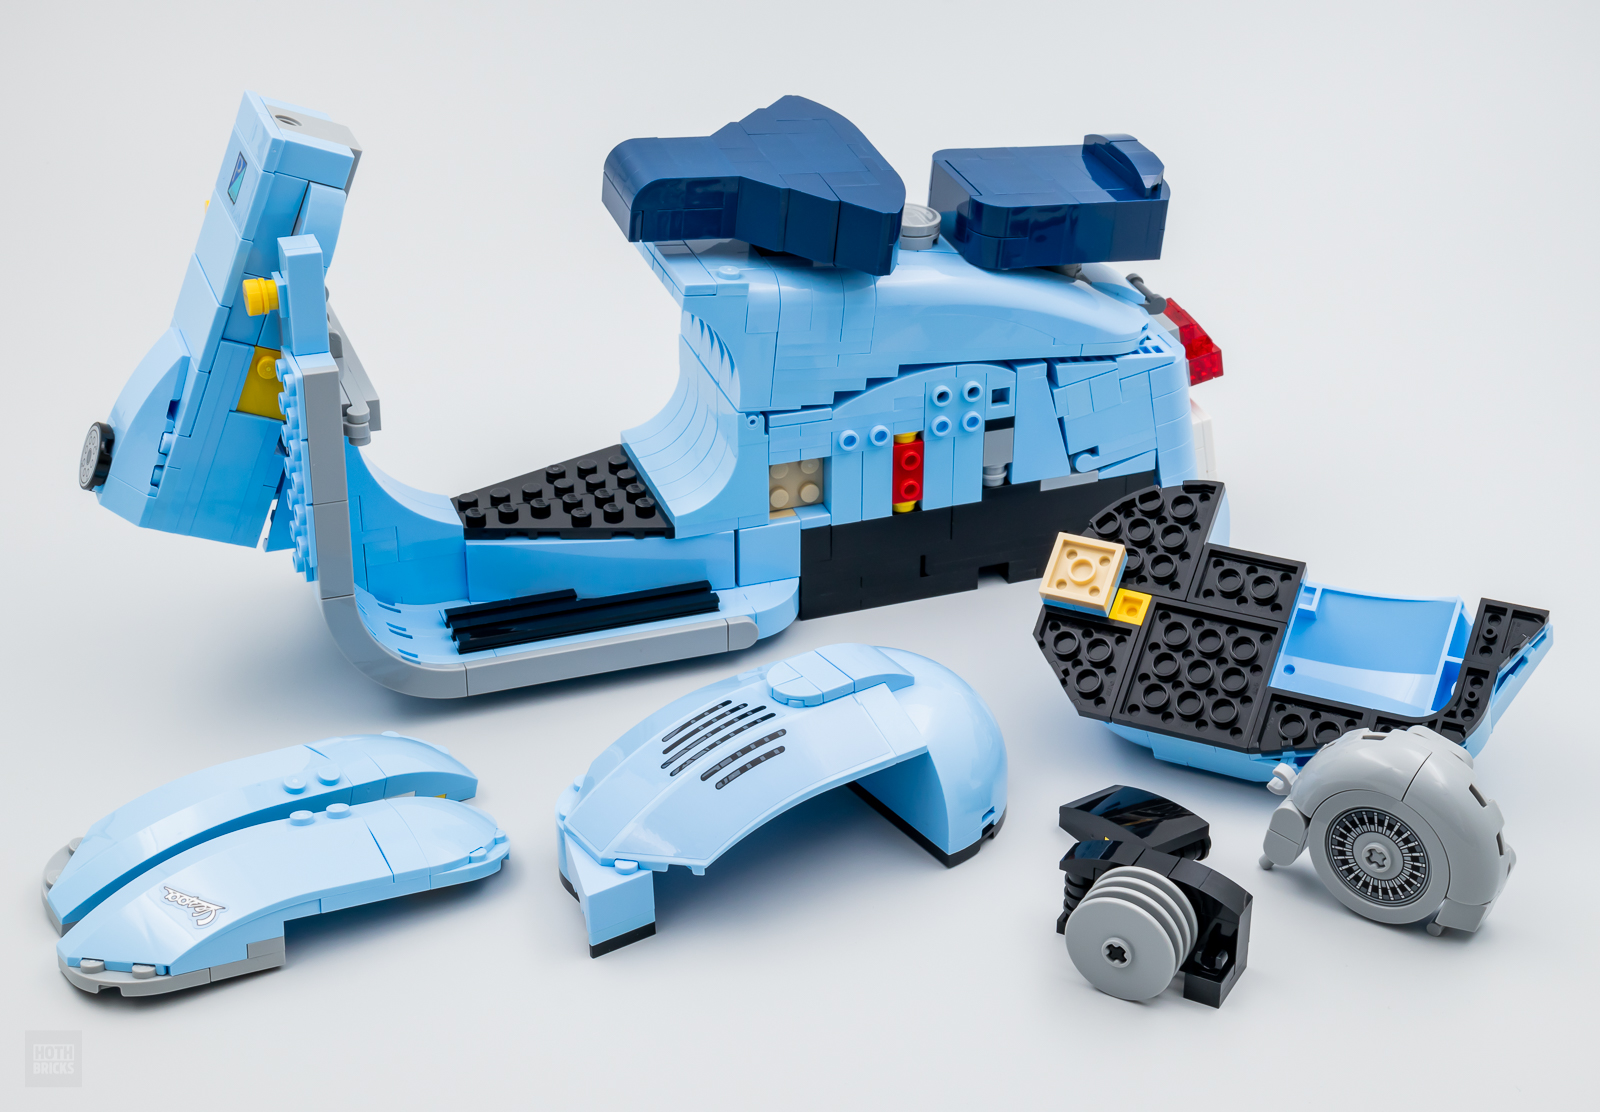 Lego®icons 10298 - vespa 125, jeux de constructions & maquettes